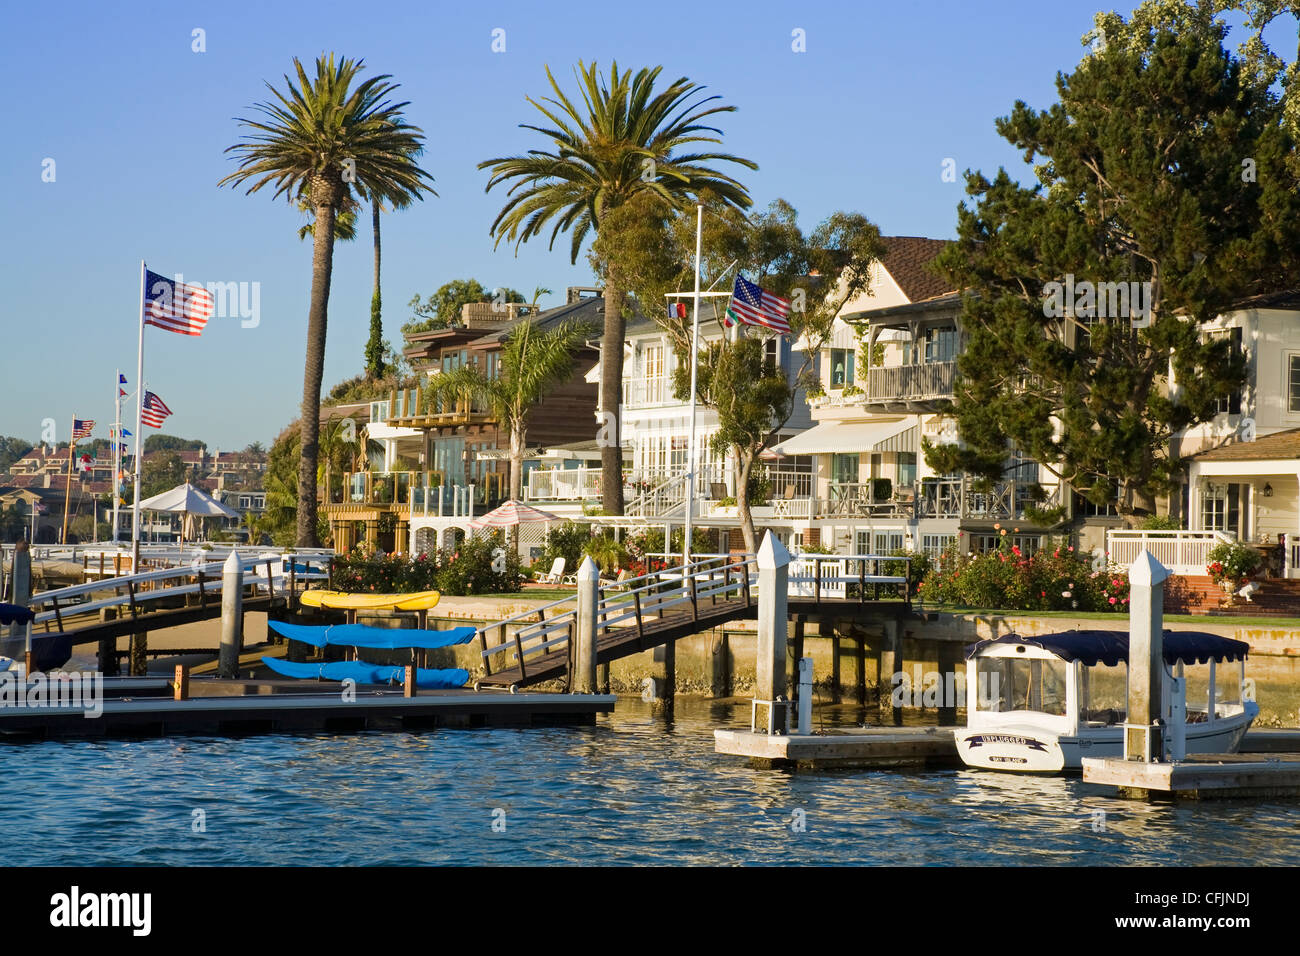 Dans l'île de la baie de Balboa, Newport Beach, Orange County, Californie, États-Unis d'Amérique, Amérique du Nord Banque D'Images